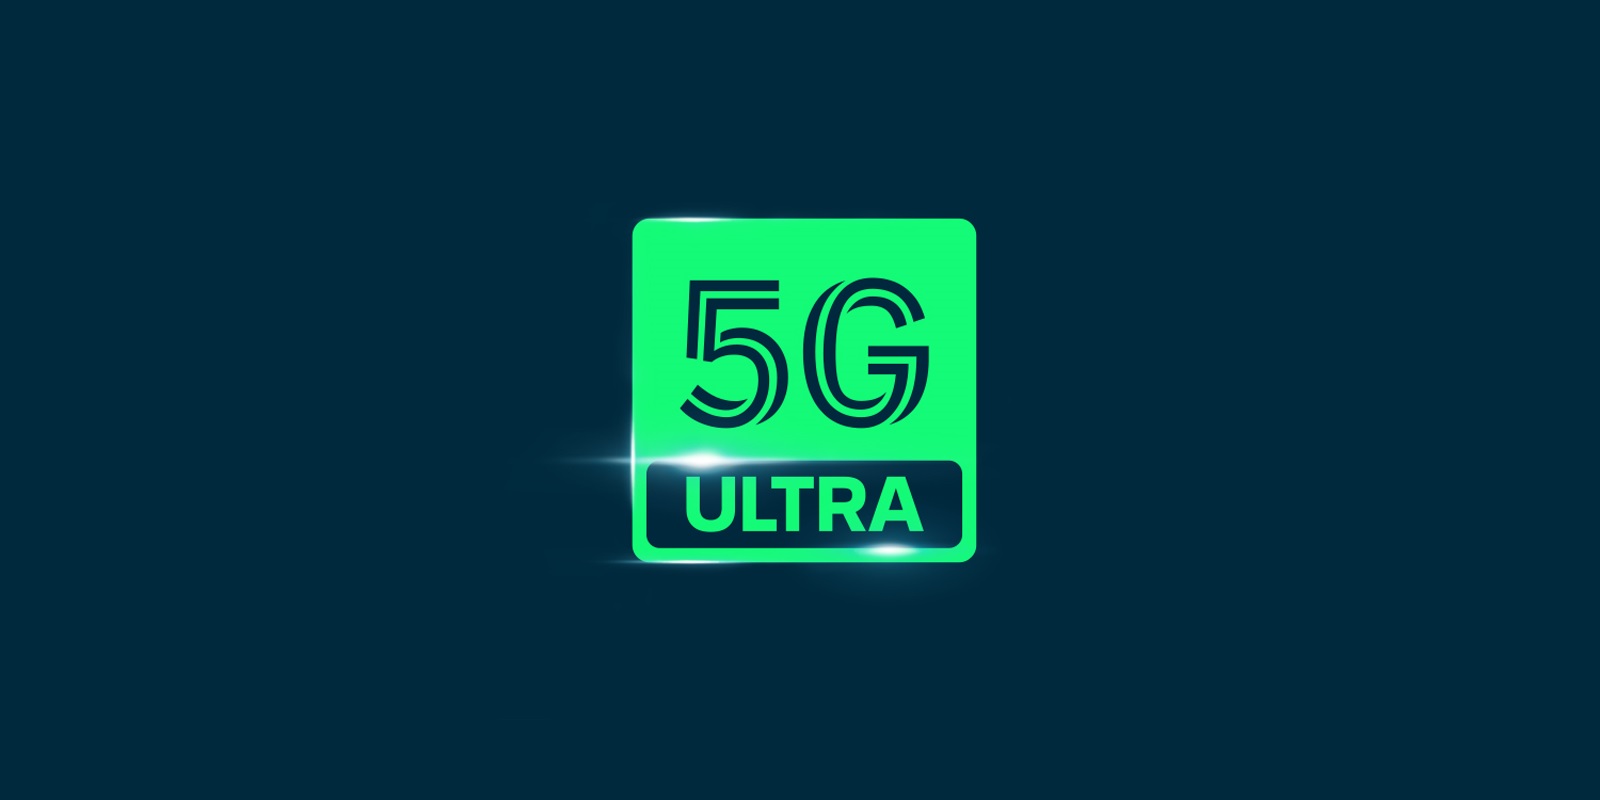 Plus 5G Ultra logo